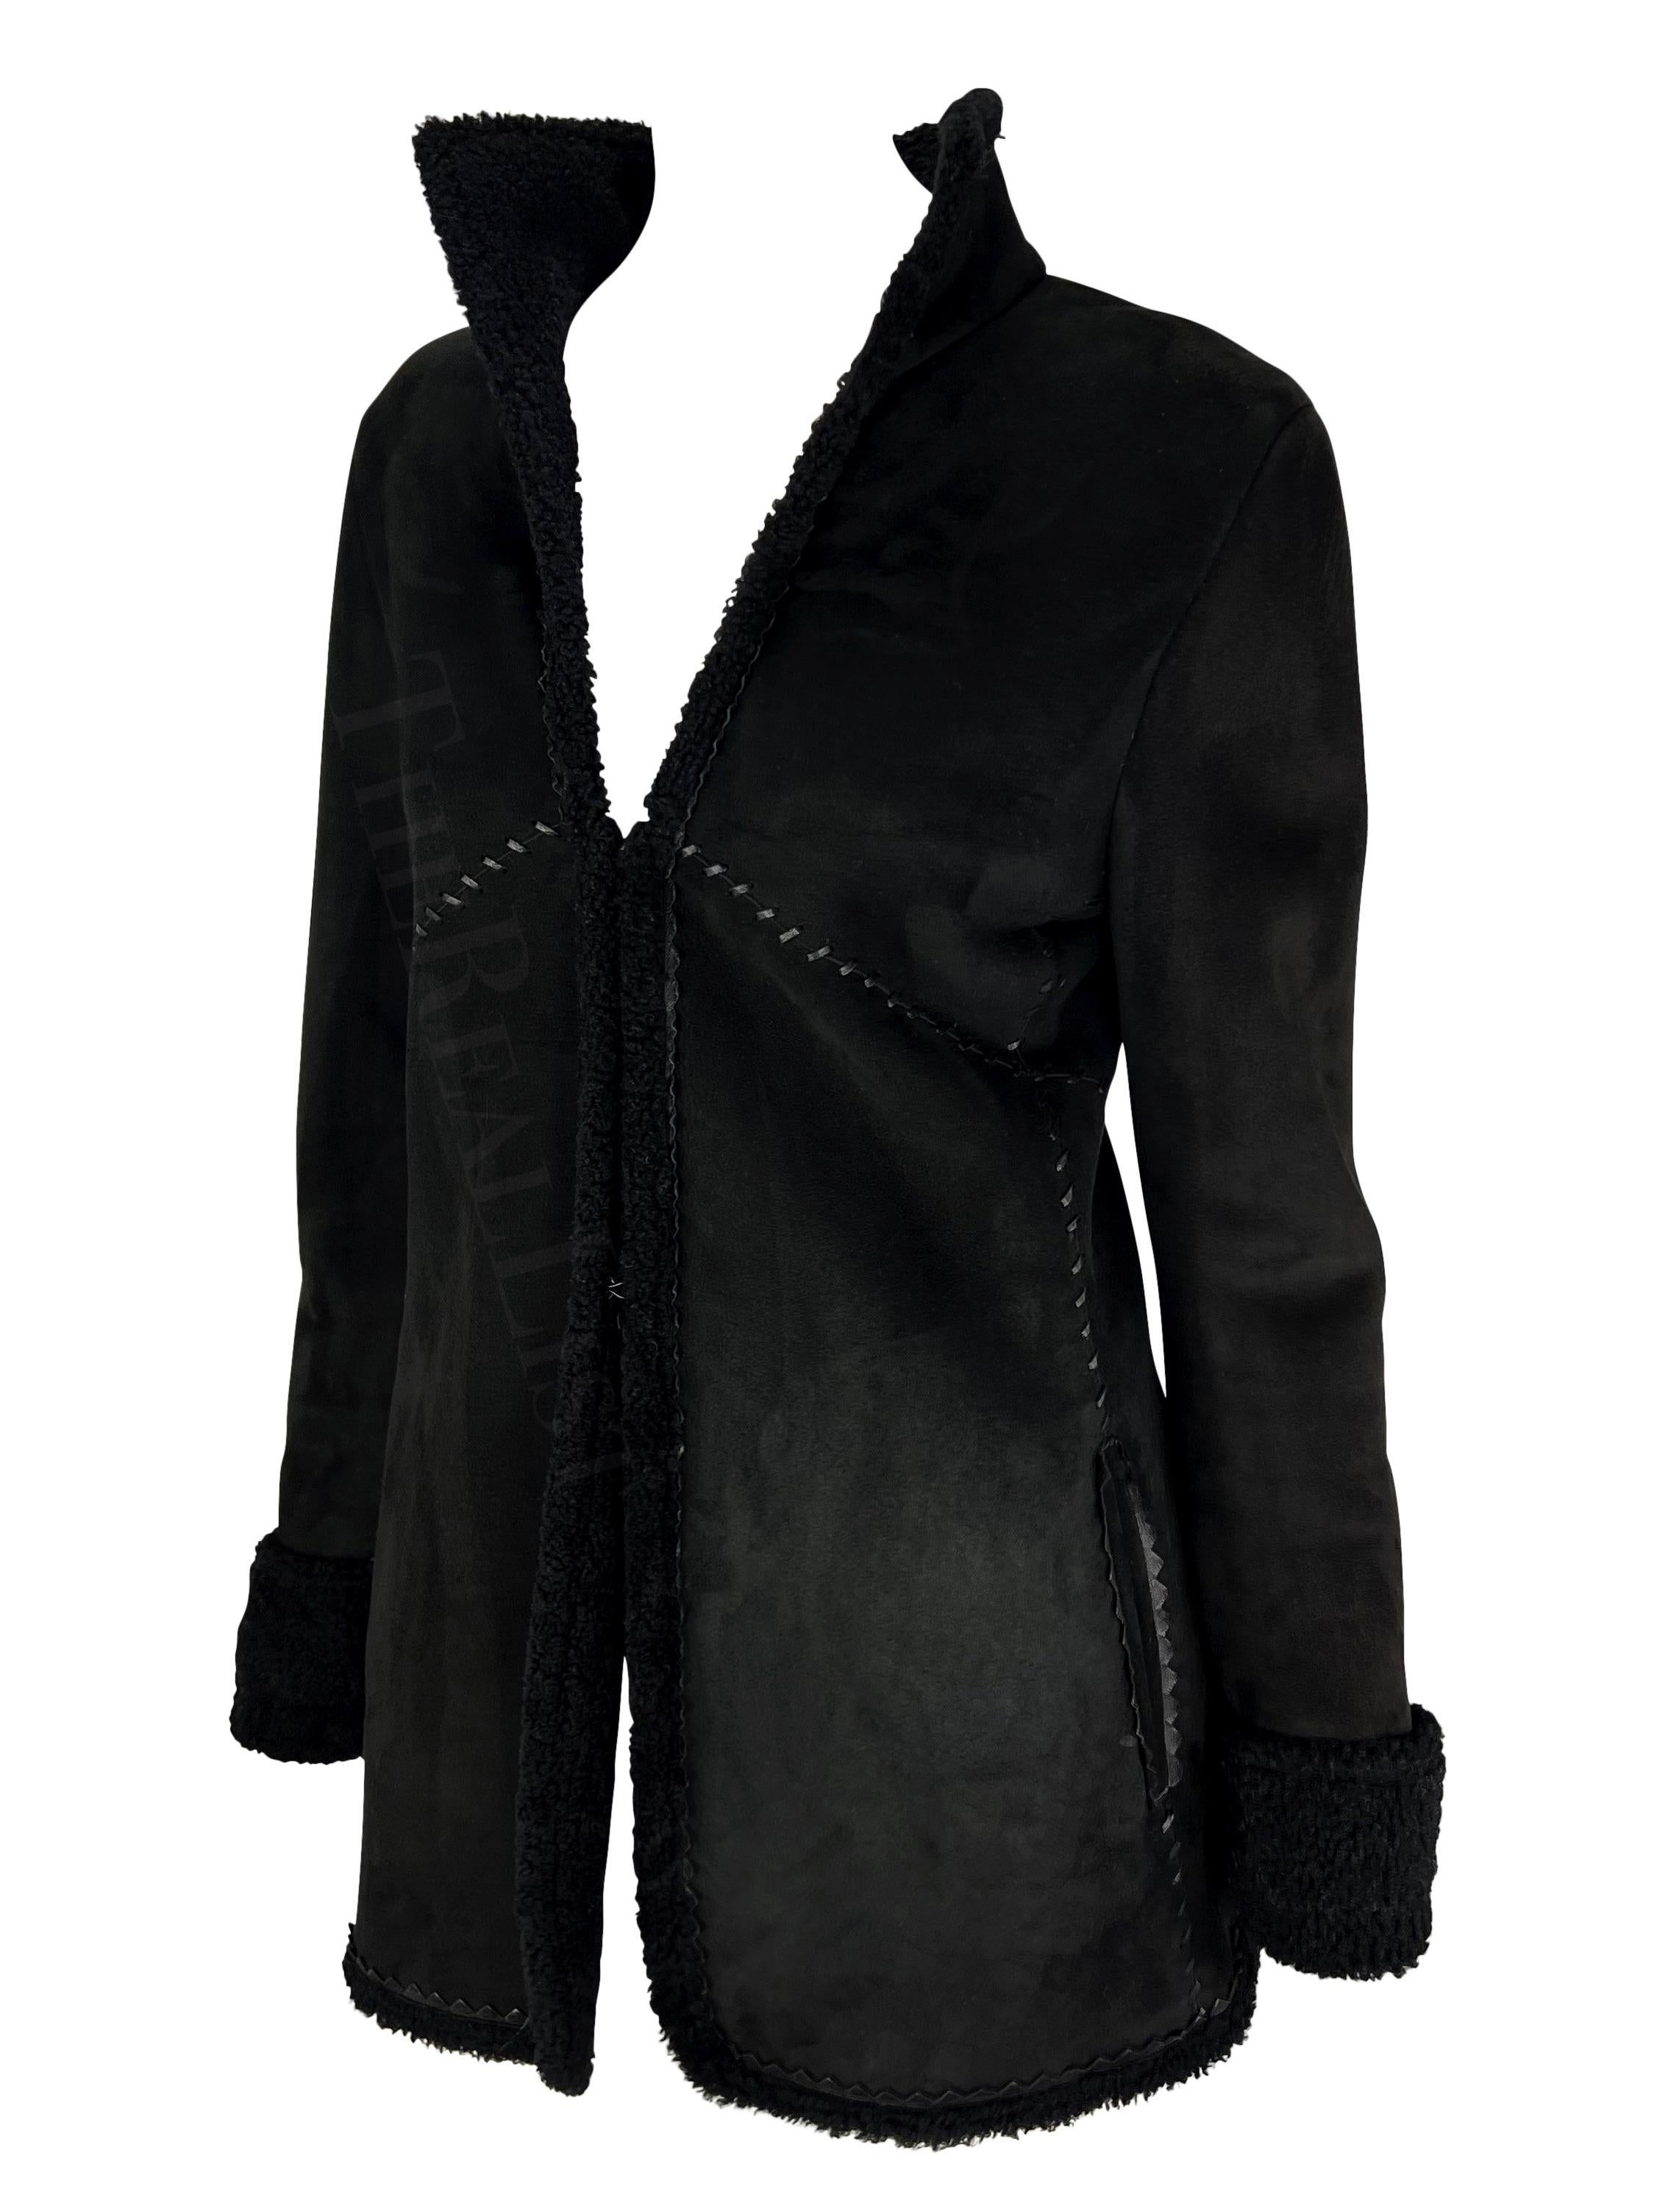 Présentation d'un manteau en shearling noir Gianni Versace, dessiné par Donatella Versace. Issu de la collection automne/hiver 2002, ce manteau présente un extérieur en daim et un intérieur en shearling. La fourrure de shearling peut être repliée